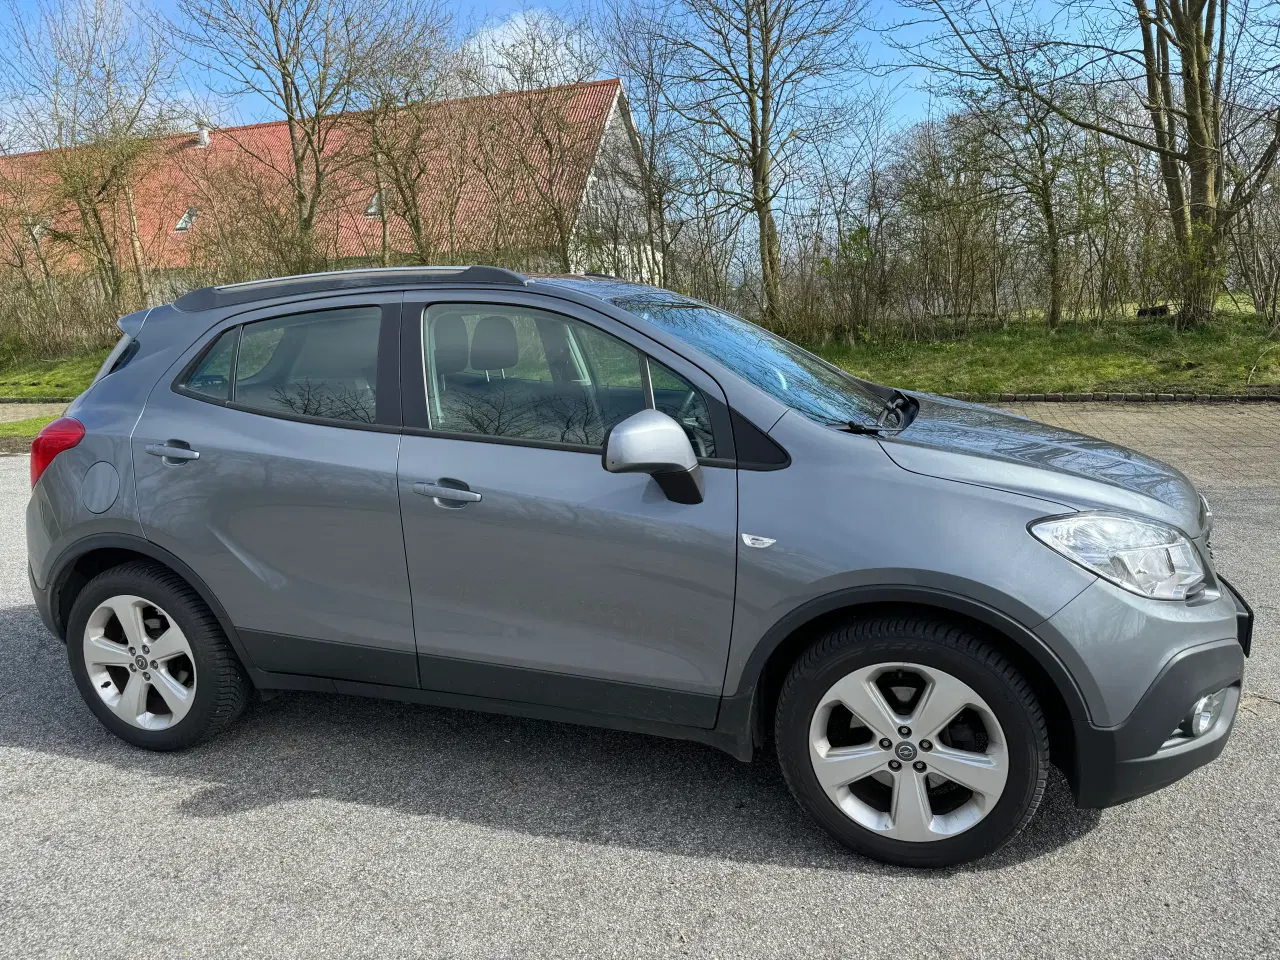 Billede 3 - Opel Mokka 1,7CDTi 130Hk 5dørs Årg 2014 Nysynet 